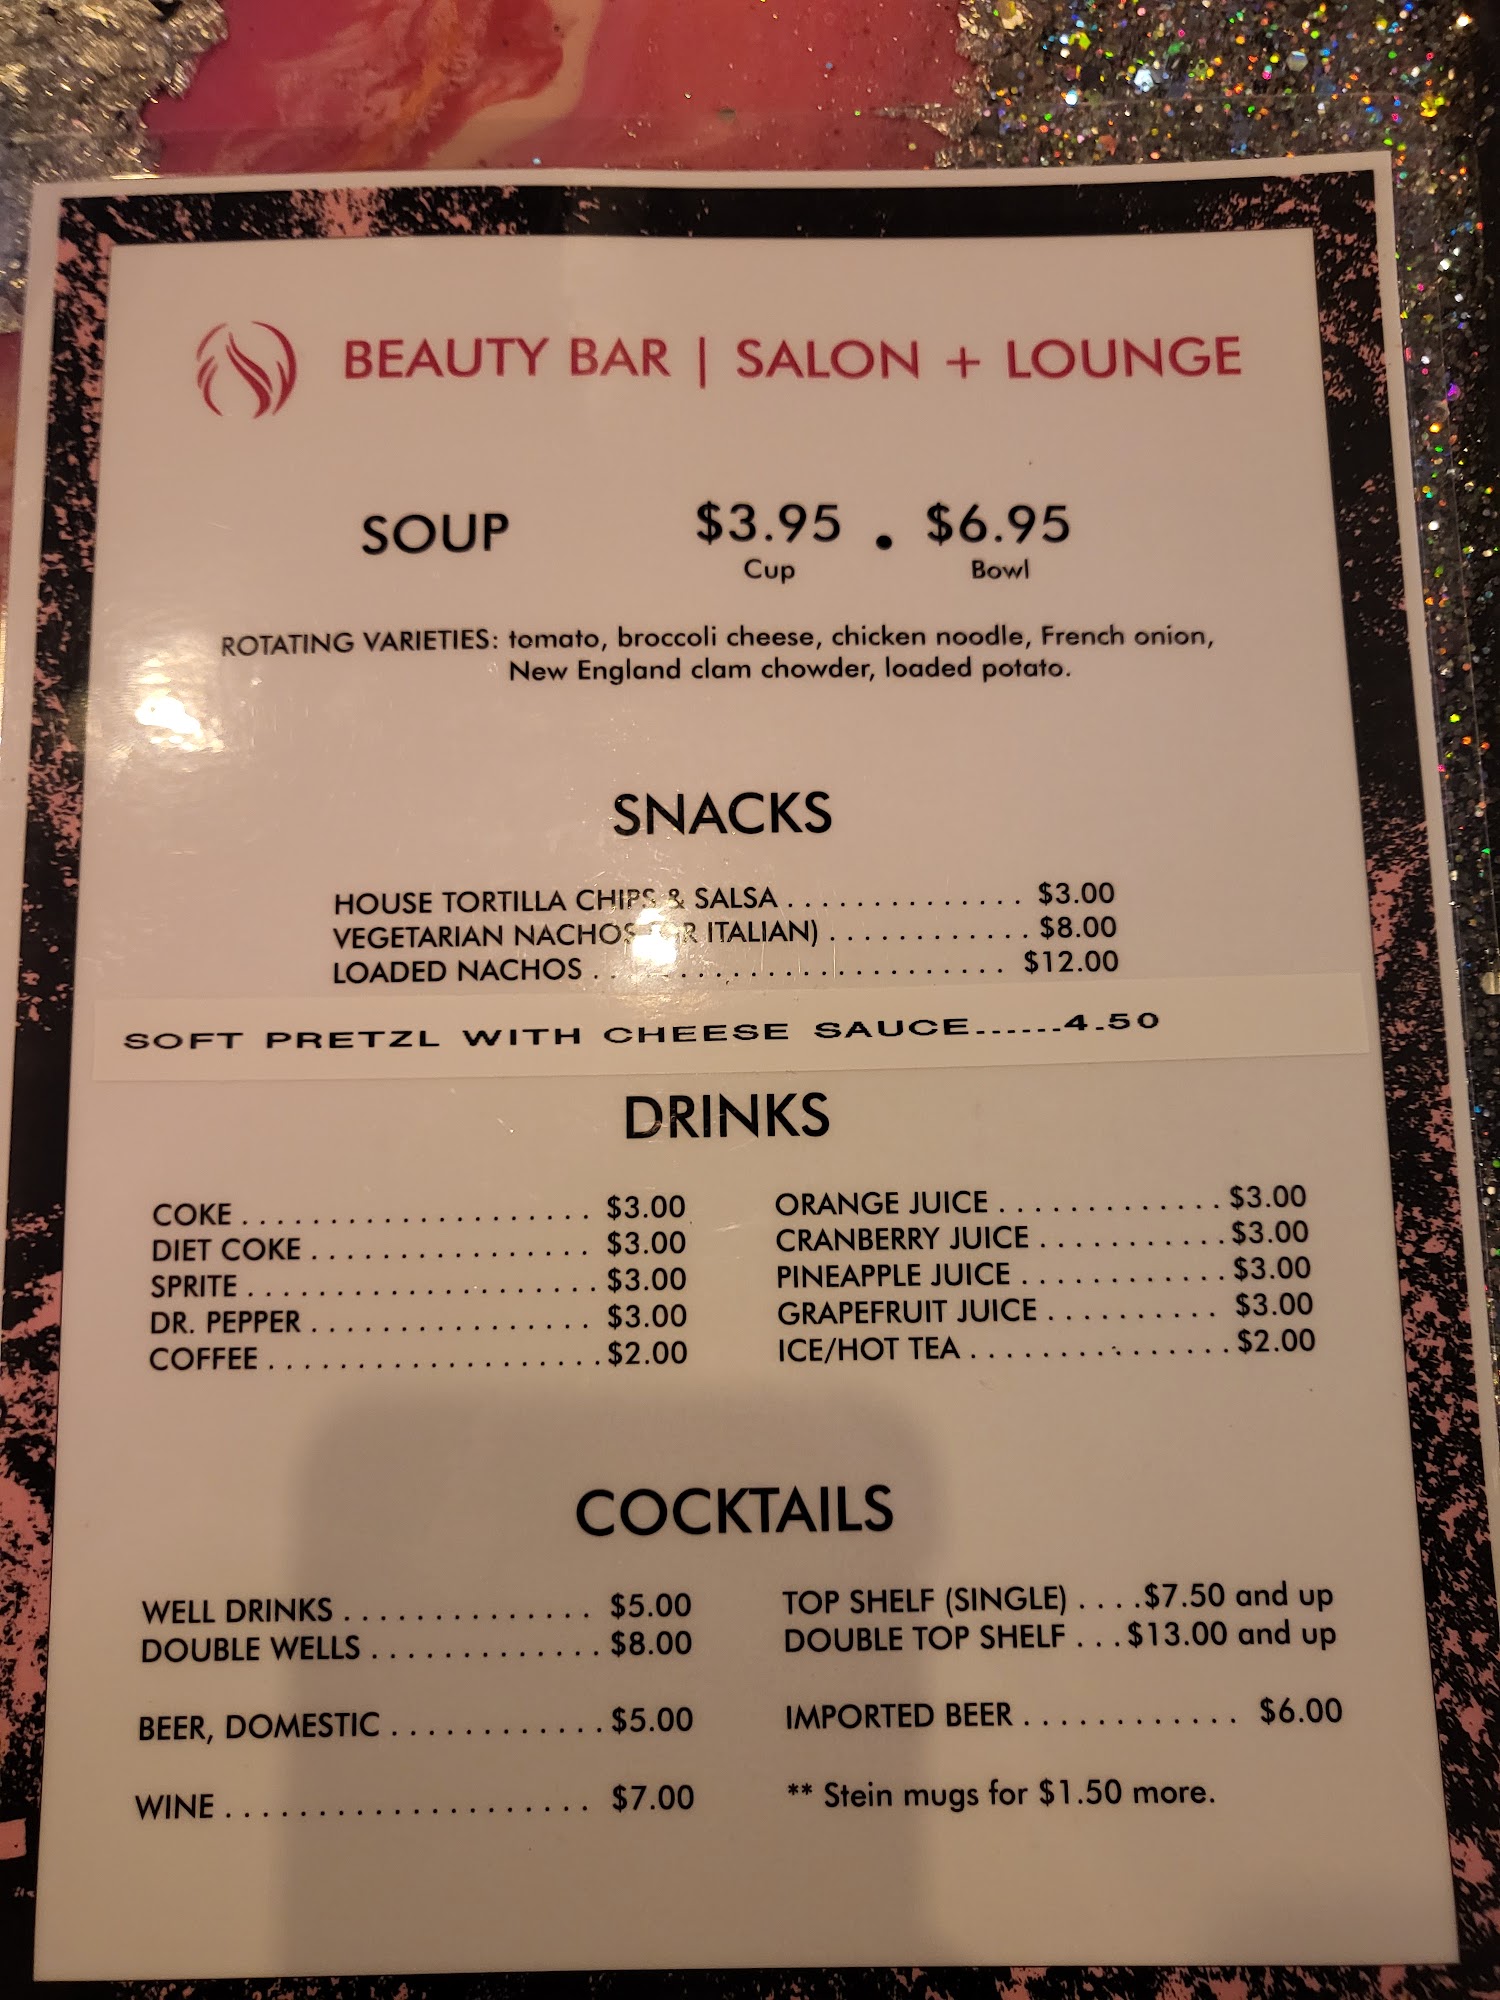 Beauty Bar | Salon + Lounge